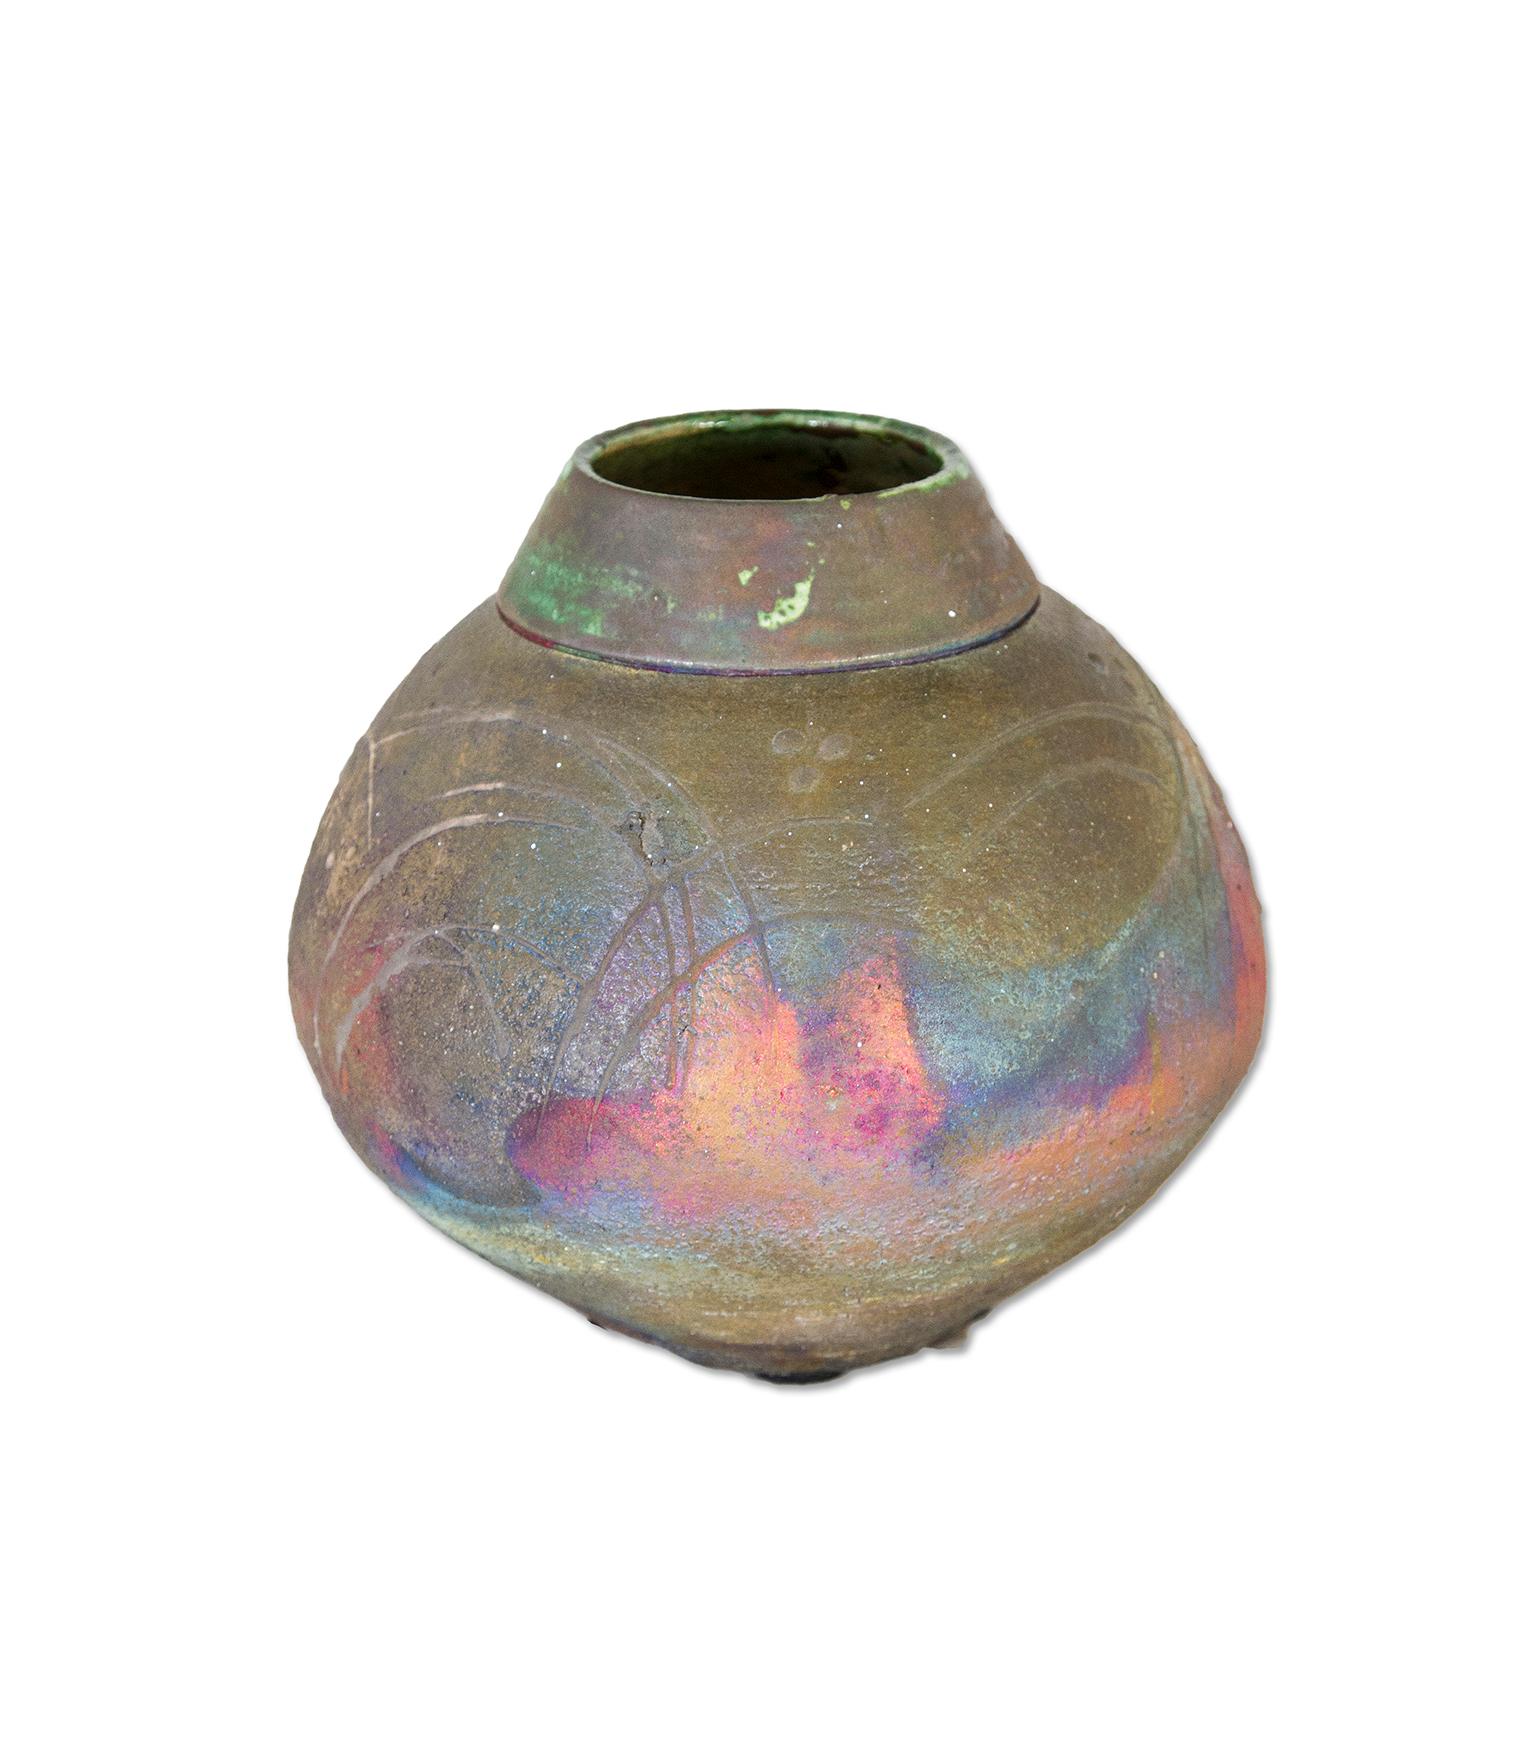 "Raku Vase with Fireworks, " colorful unique vase design lovers